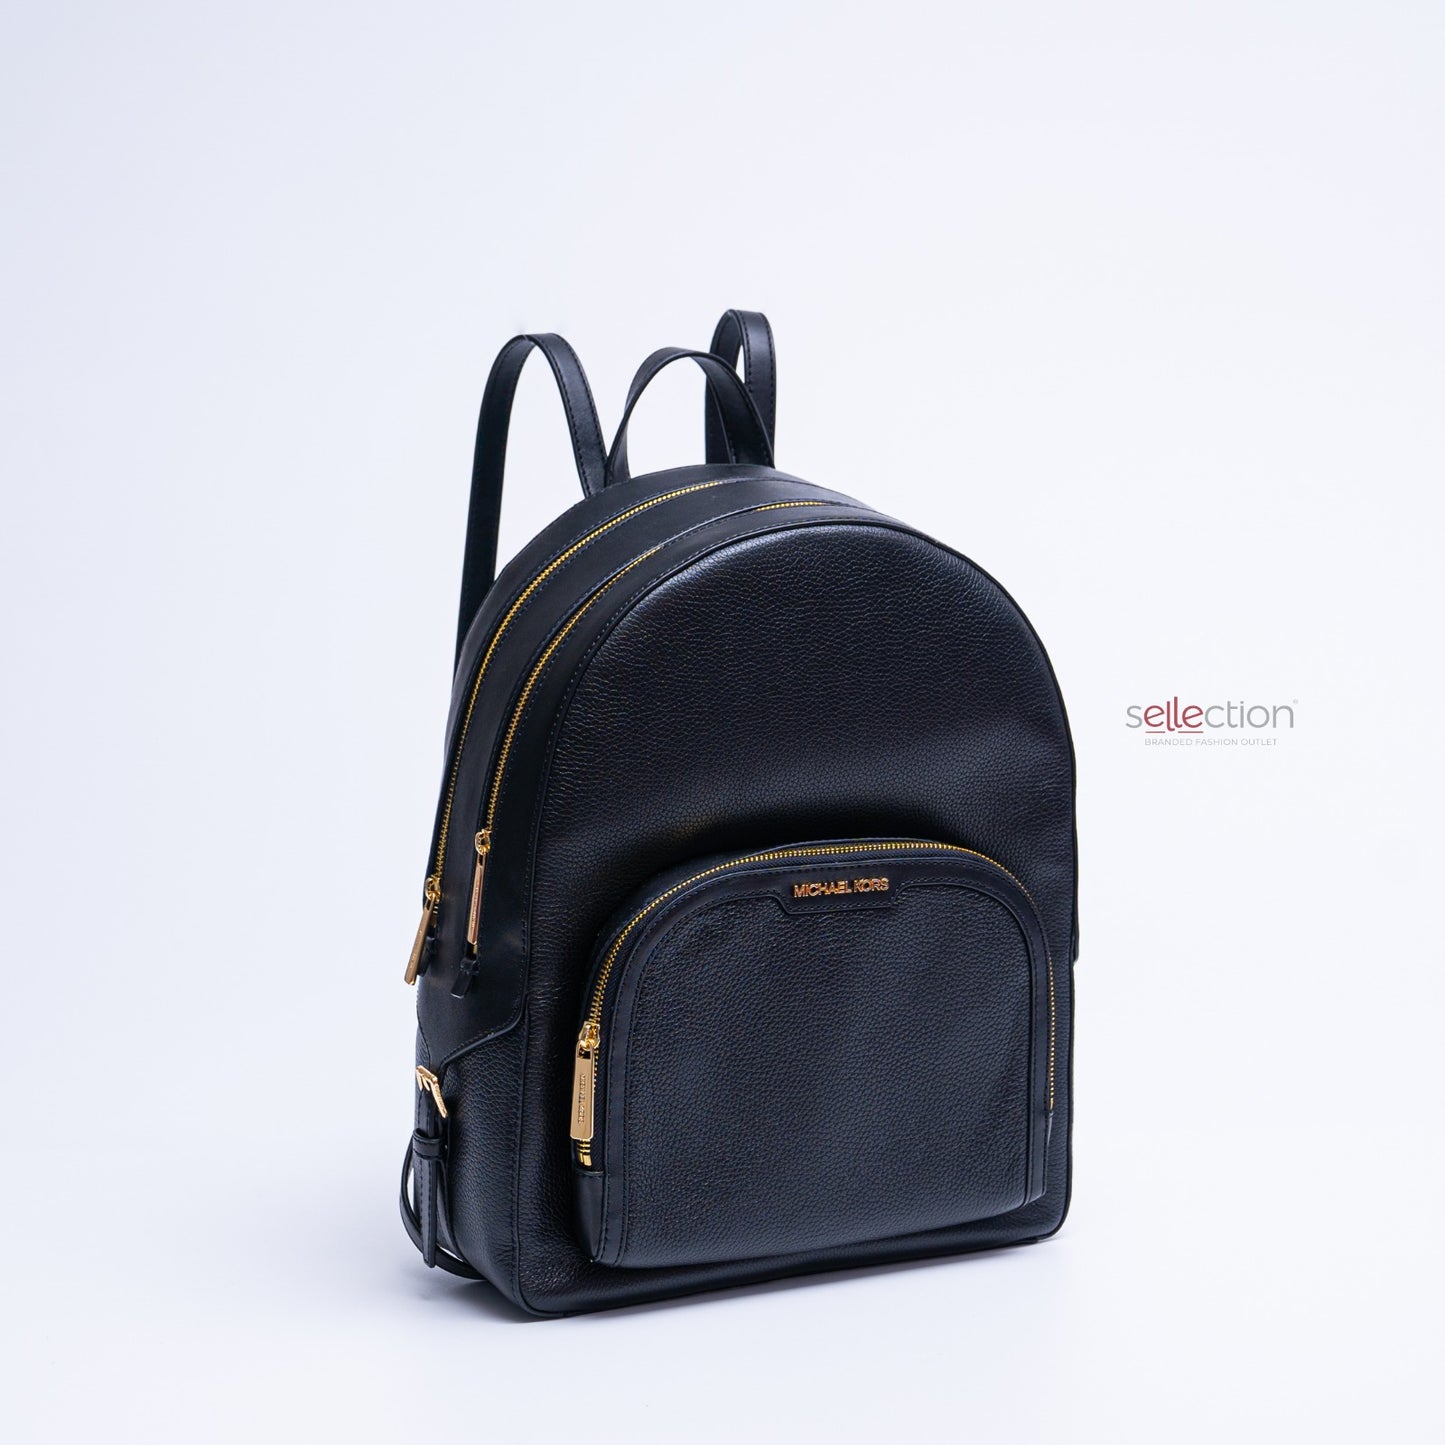 Michael Kors Jaycee Backpack Large In Black